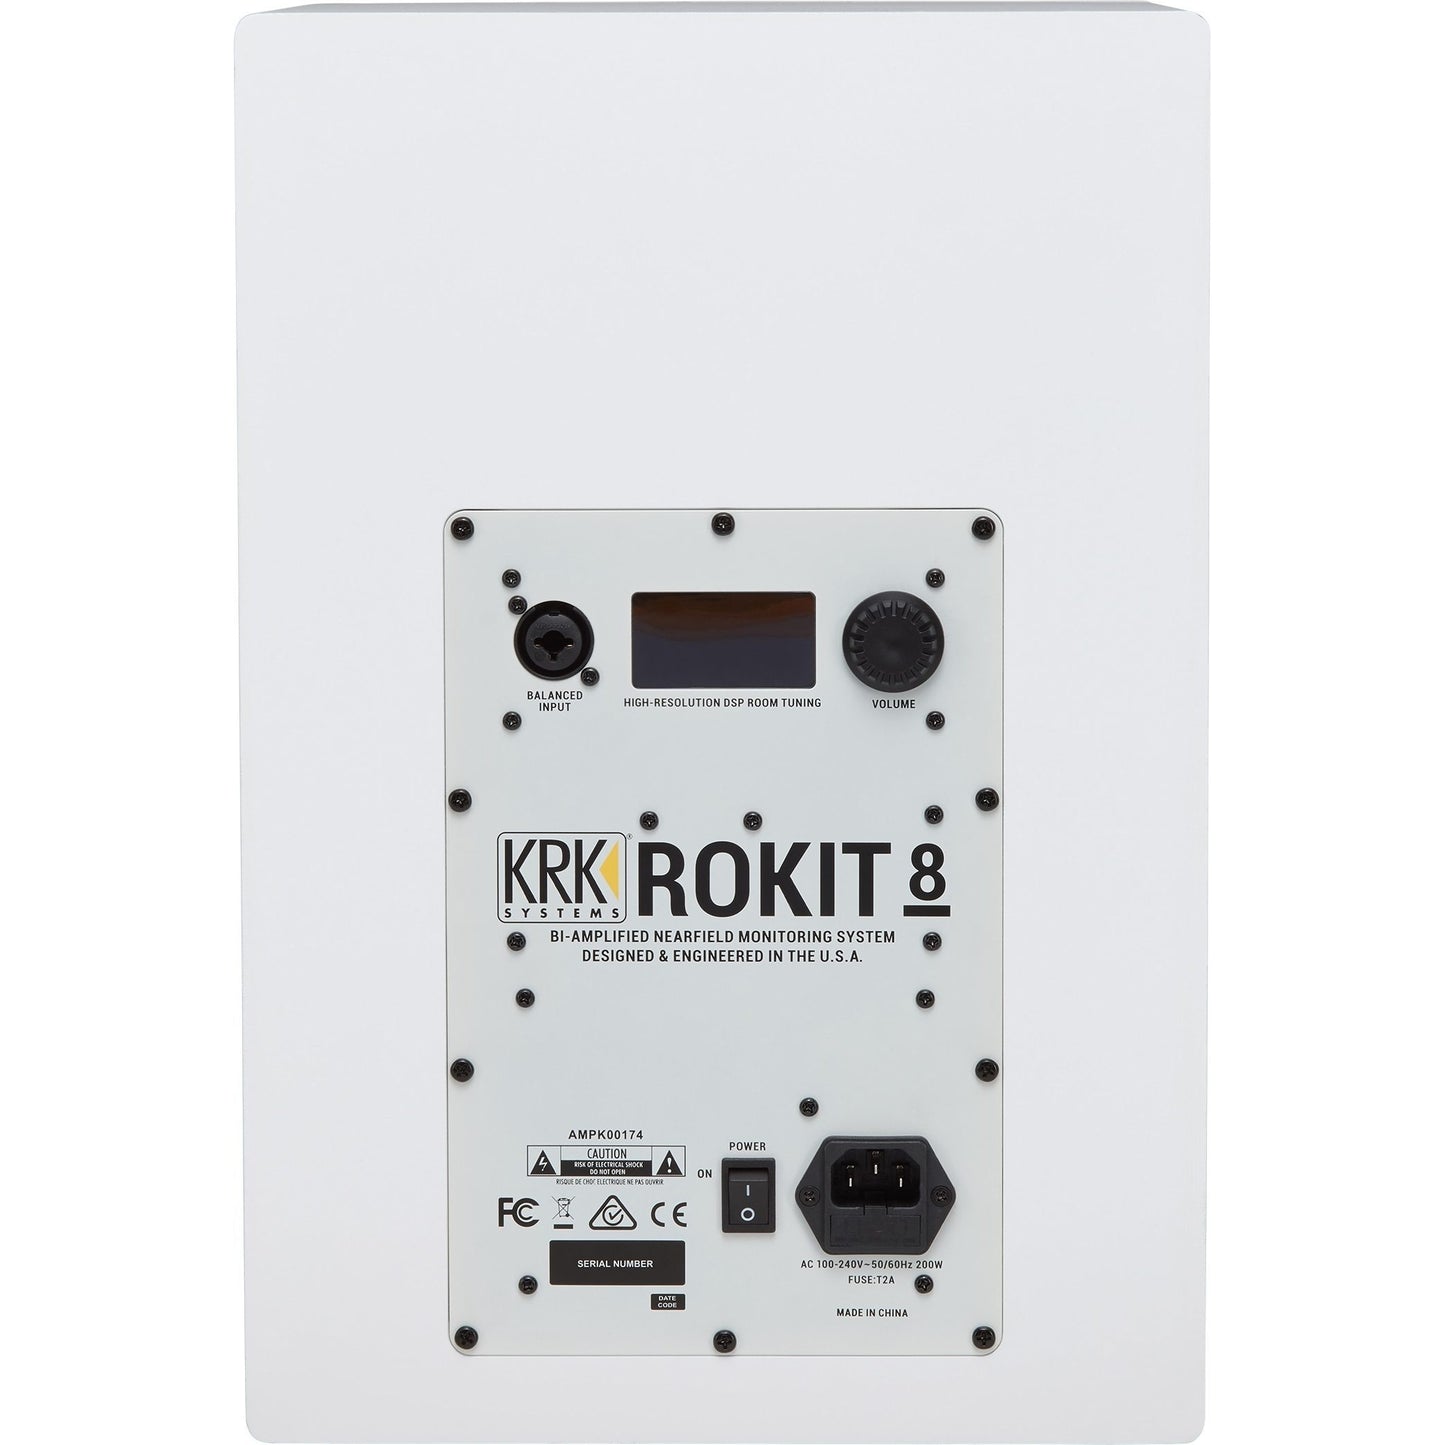 KRK RP8G4 Rokit 8 Generation 4 Powered Studio Monitor, White, Single Speaker